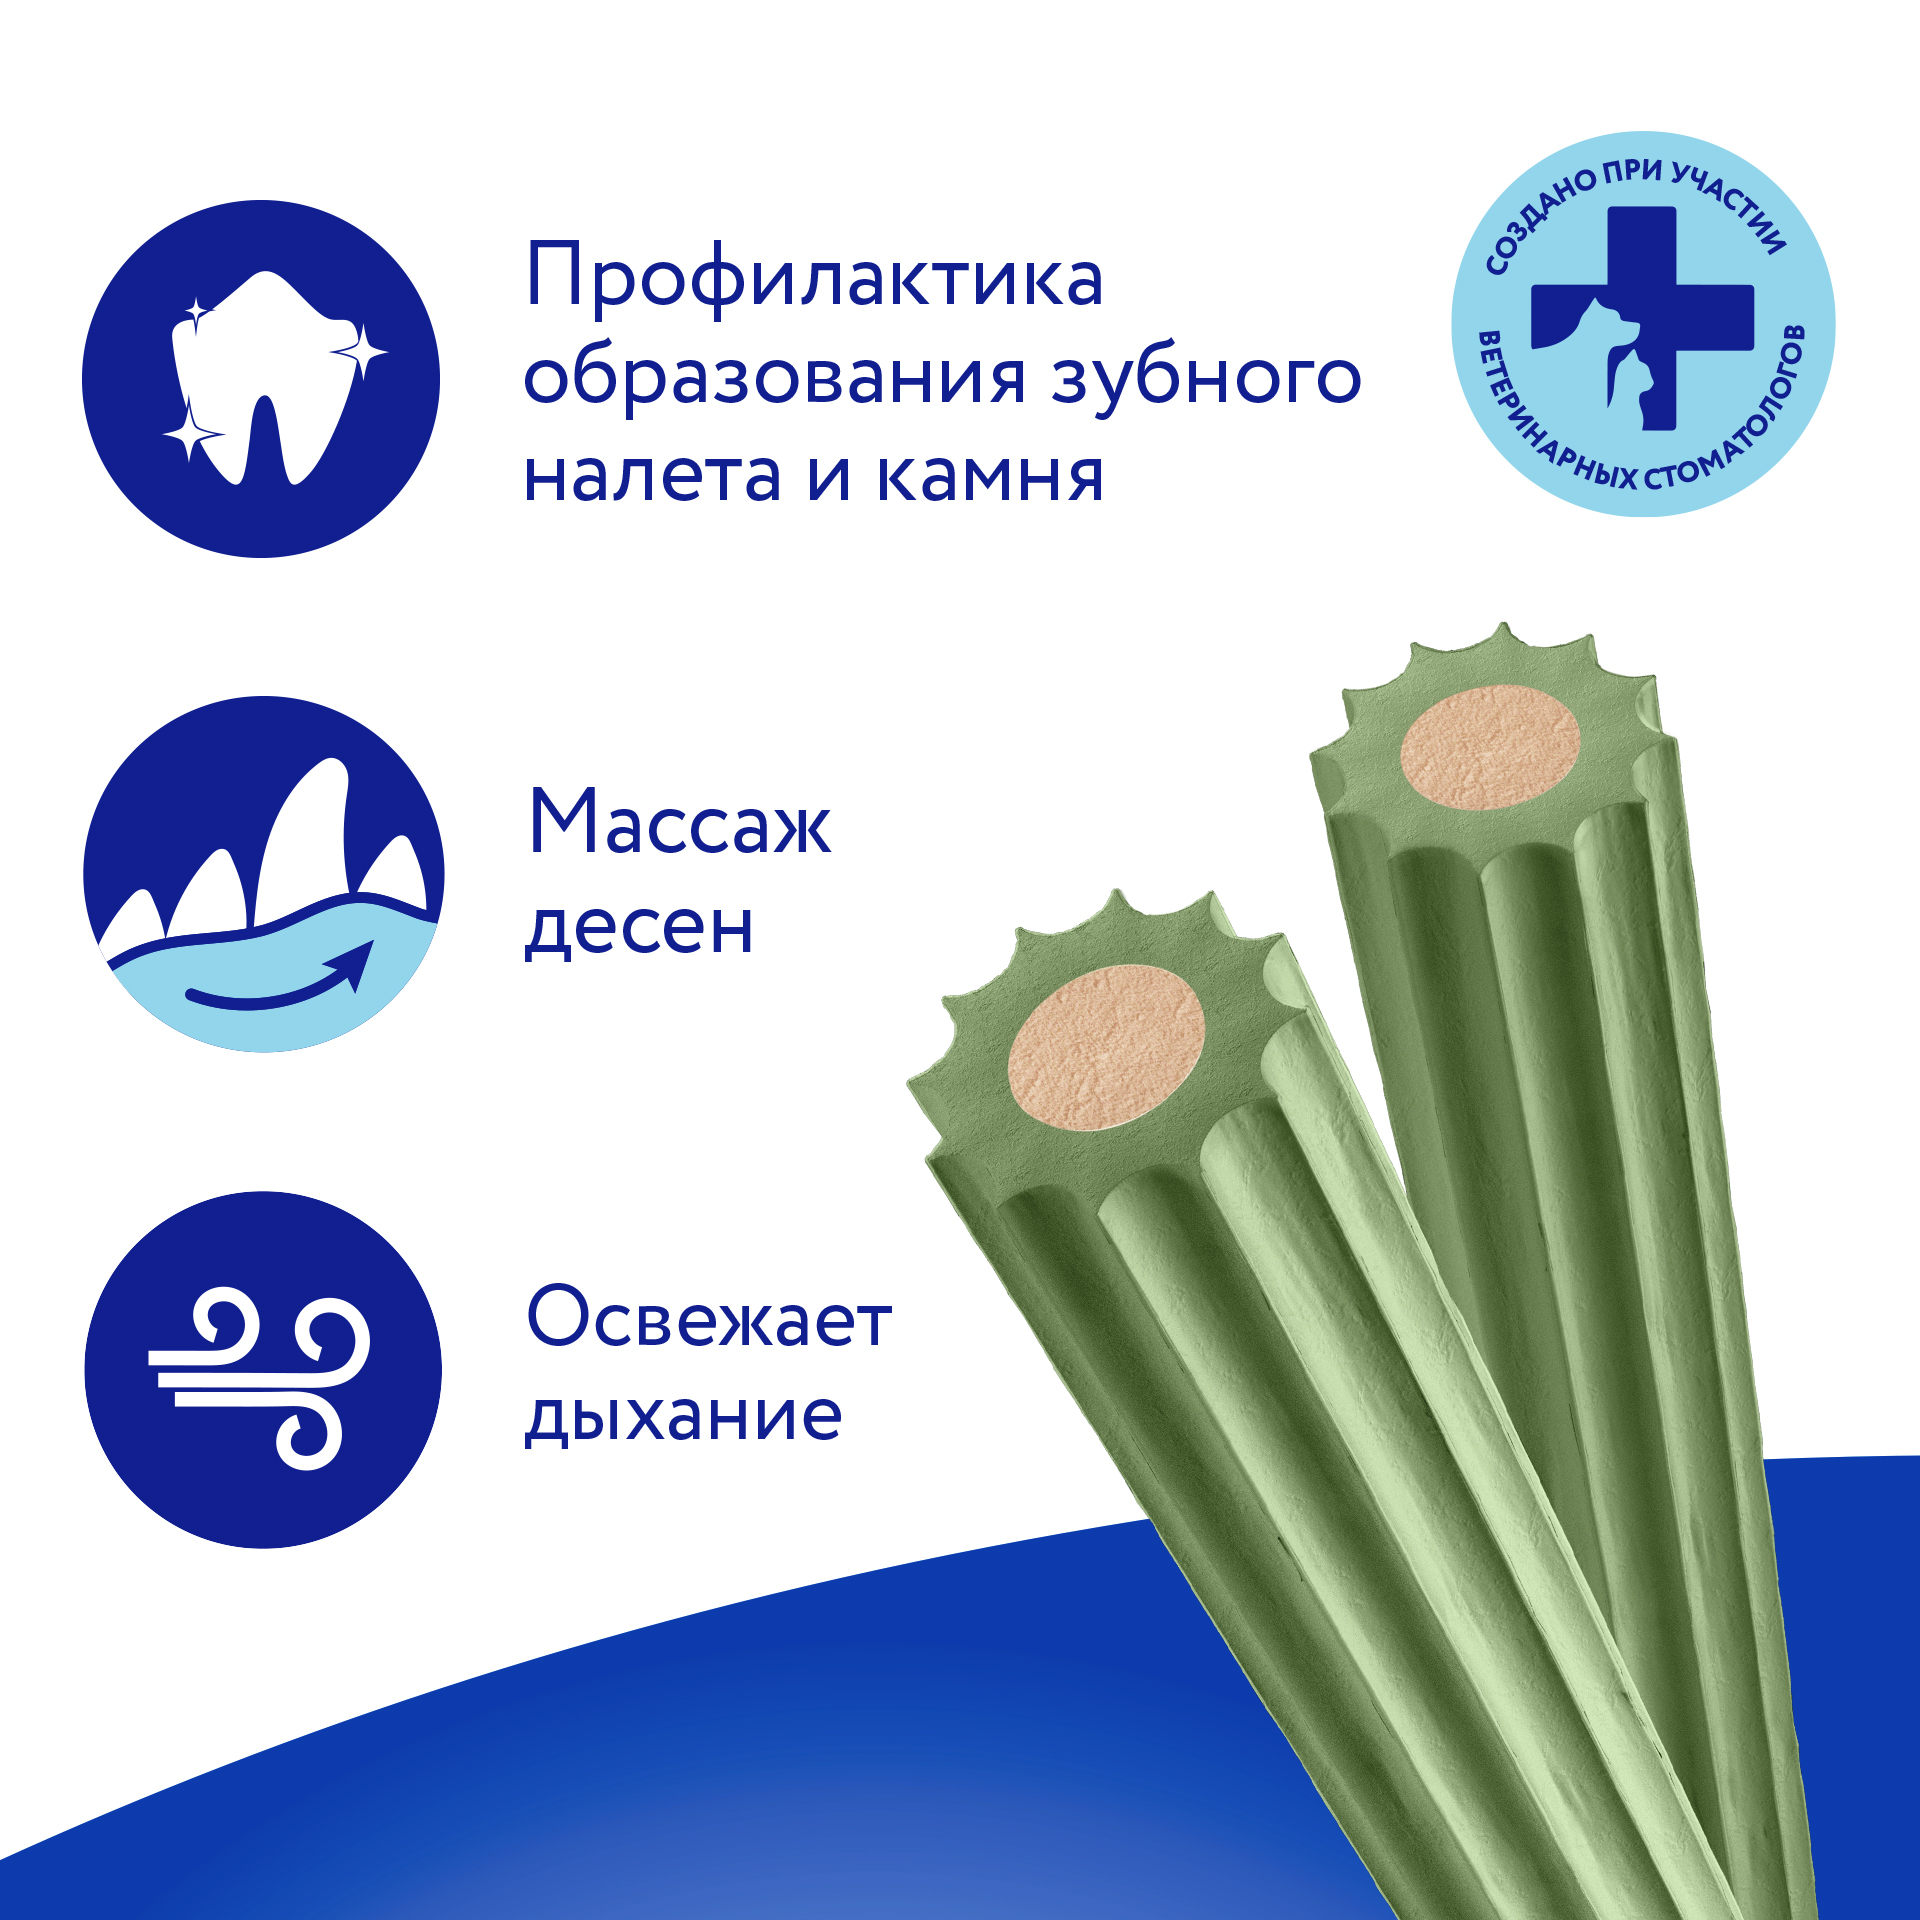 Лакомство Мнямс ДЕНТАЛ для собак "Зубные палочки" с хлорофиллом 100 г